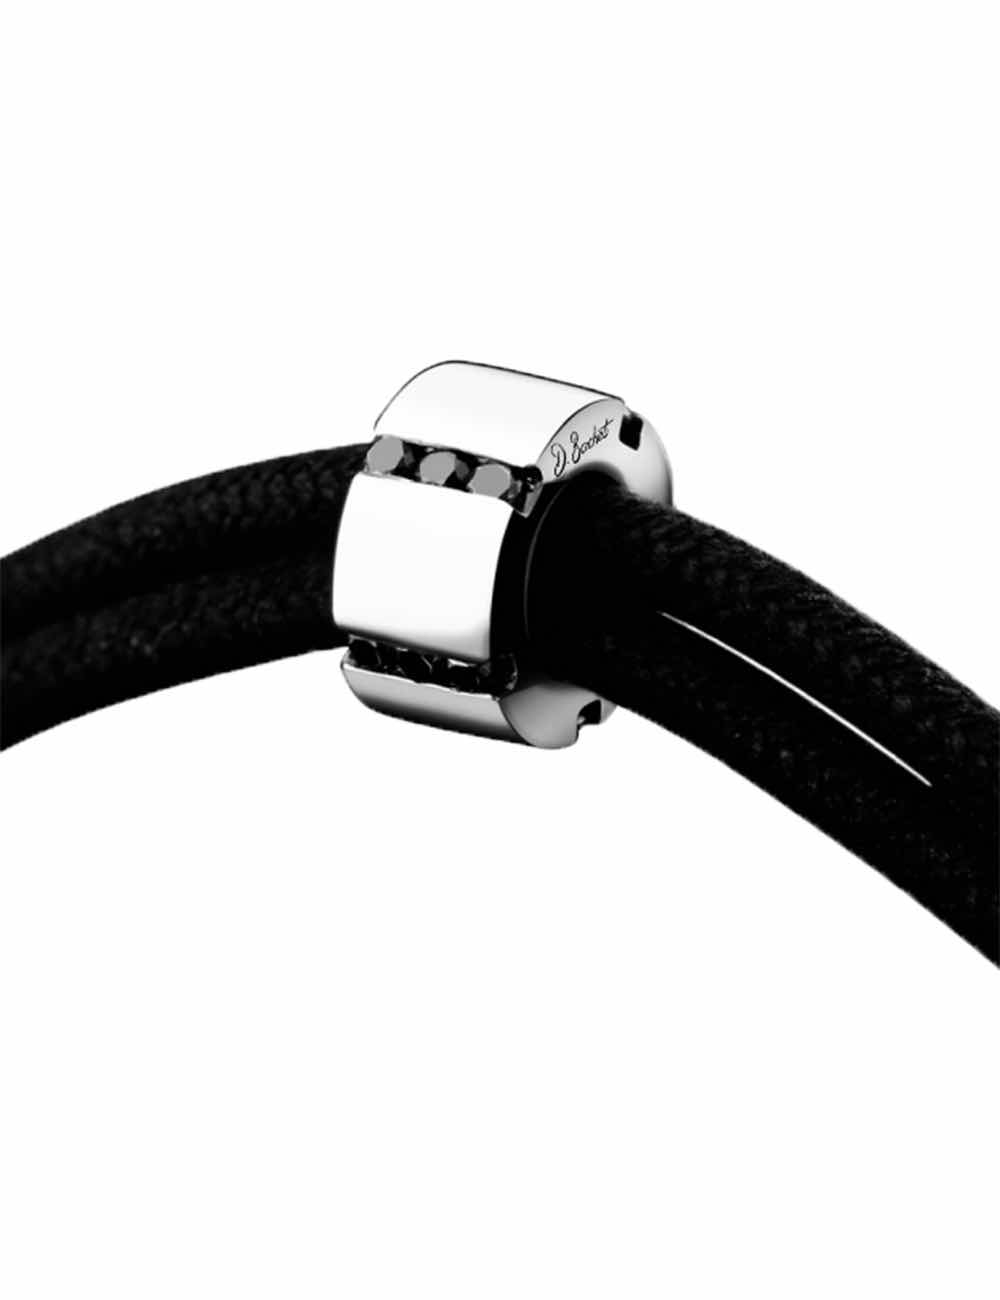 Bracelet moderne pour homme en or blanc 750 et diamants noirs sur cordon en coton noir ajustable